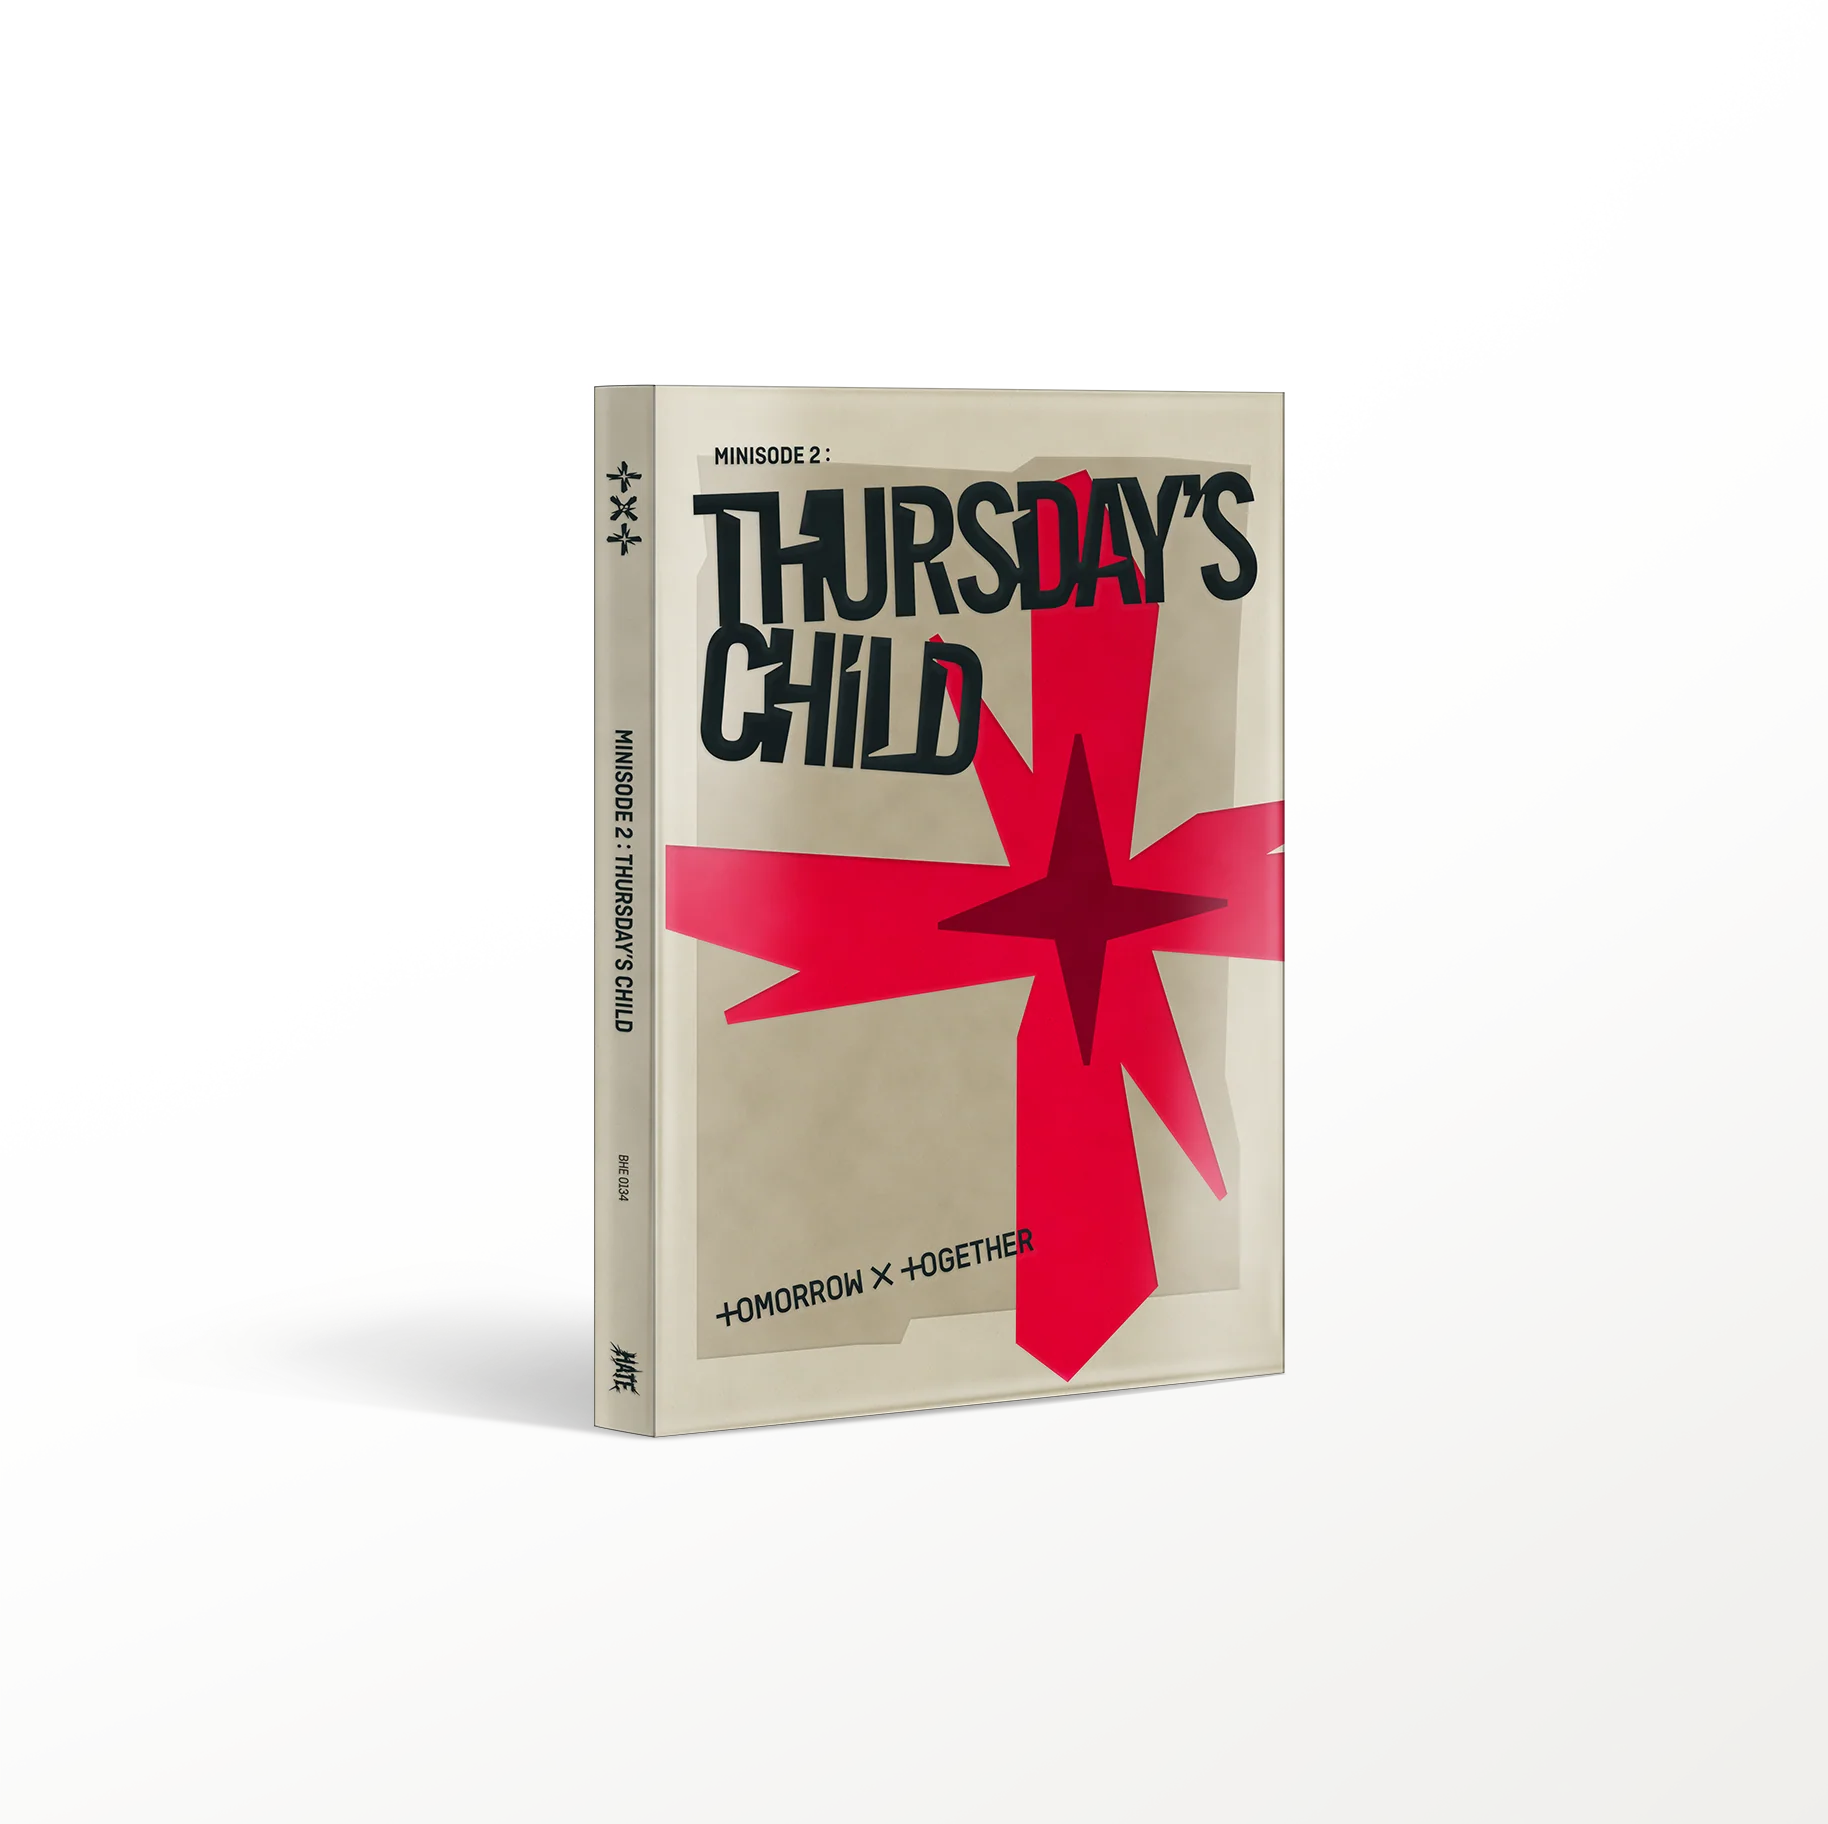 (TXT) - minisode 2: Thursday's Child